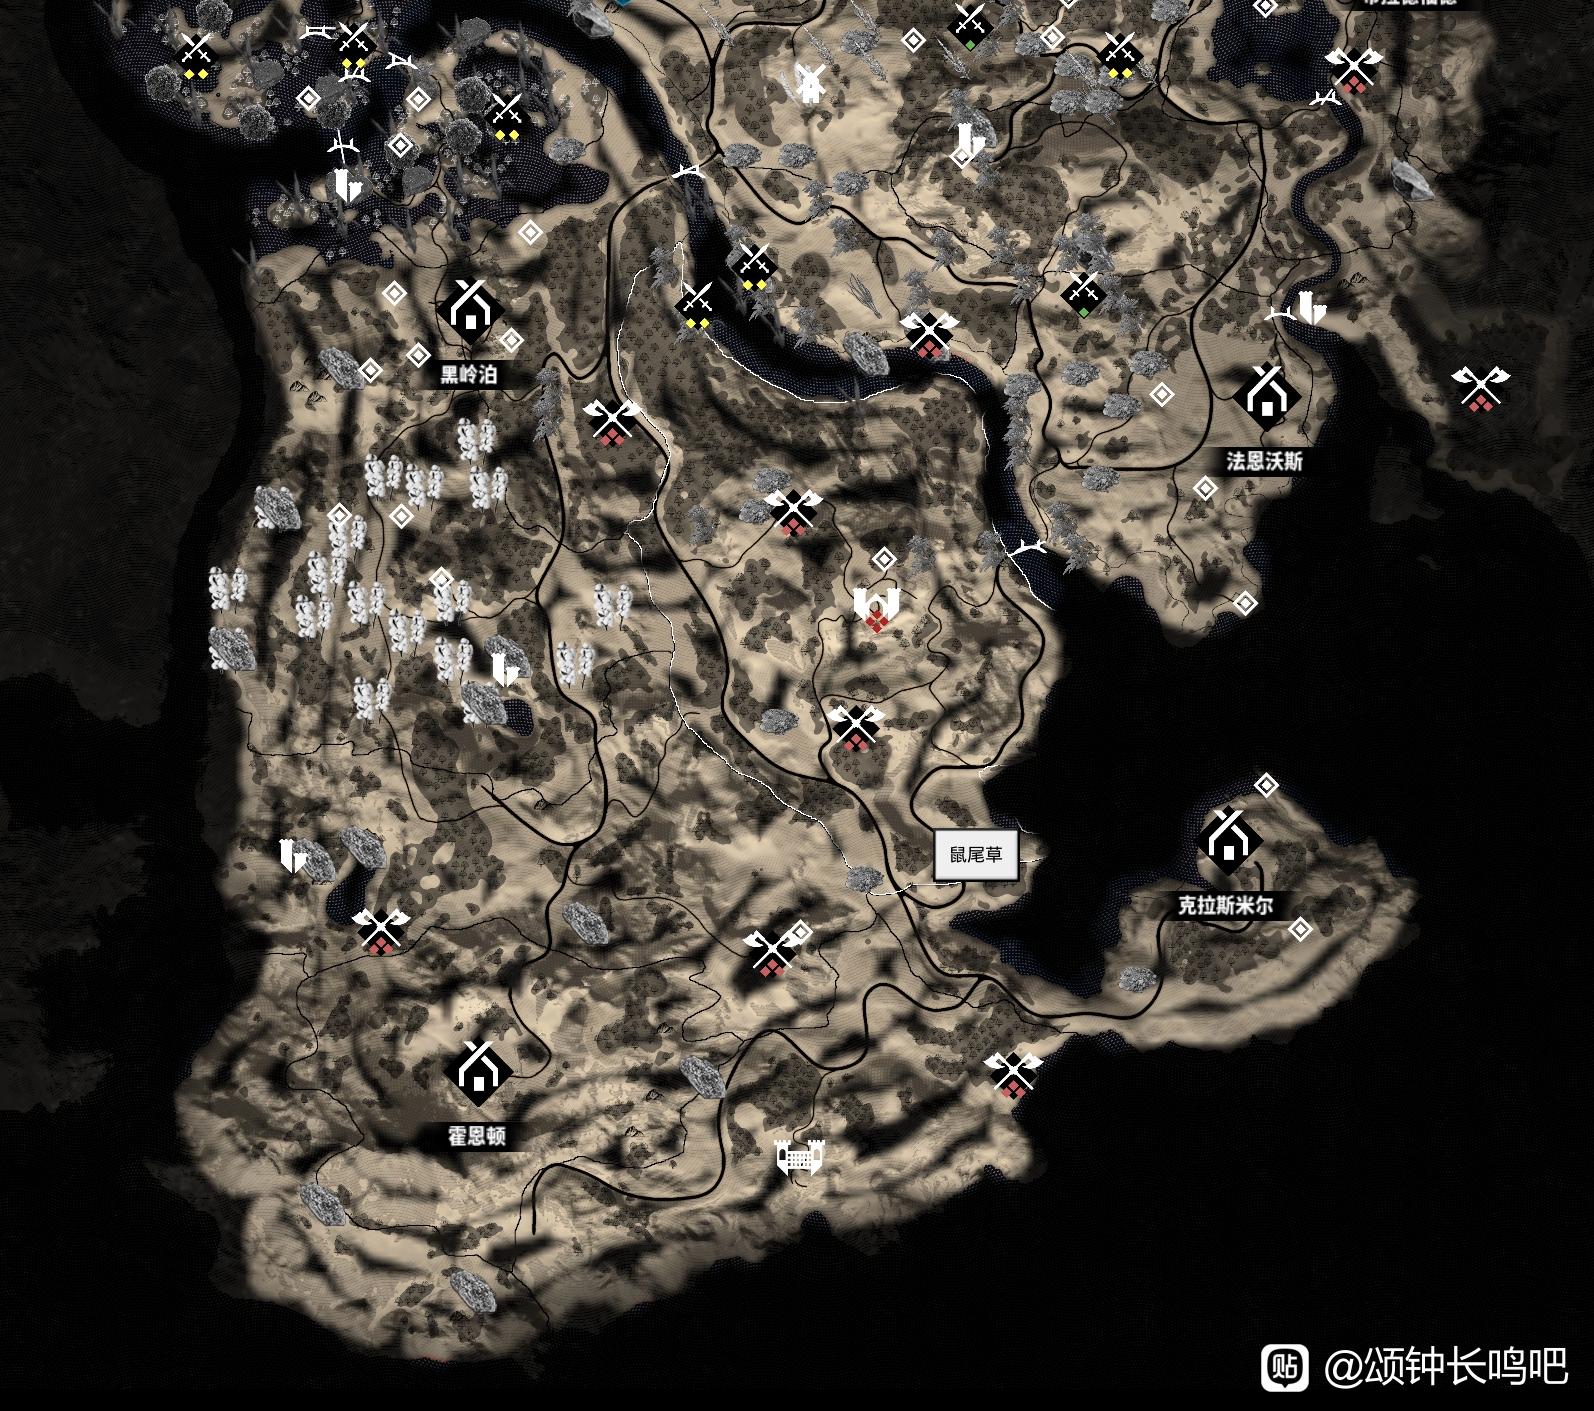 《颂钟长鸣》游戏地图上有什么重要地点